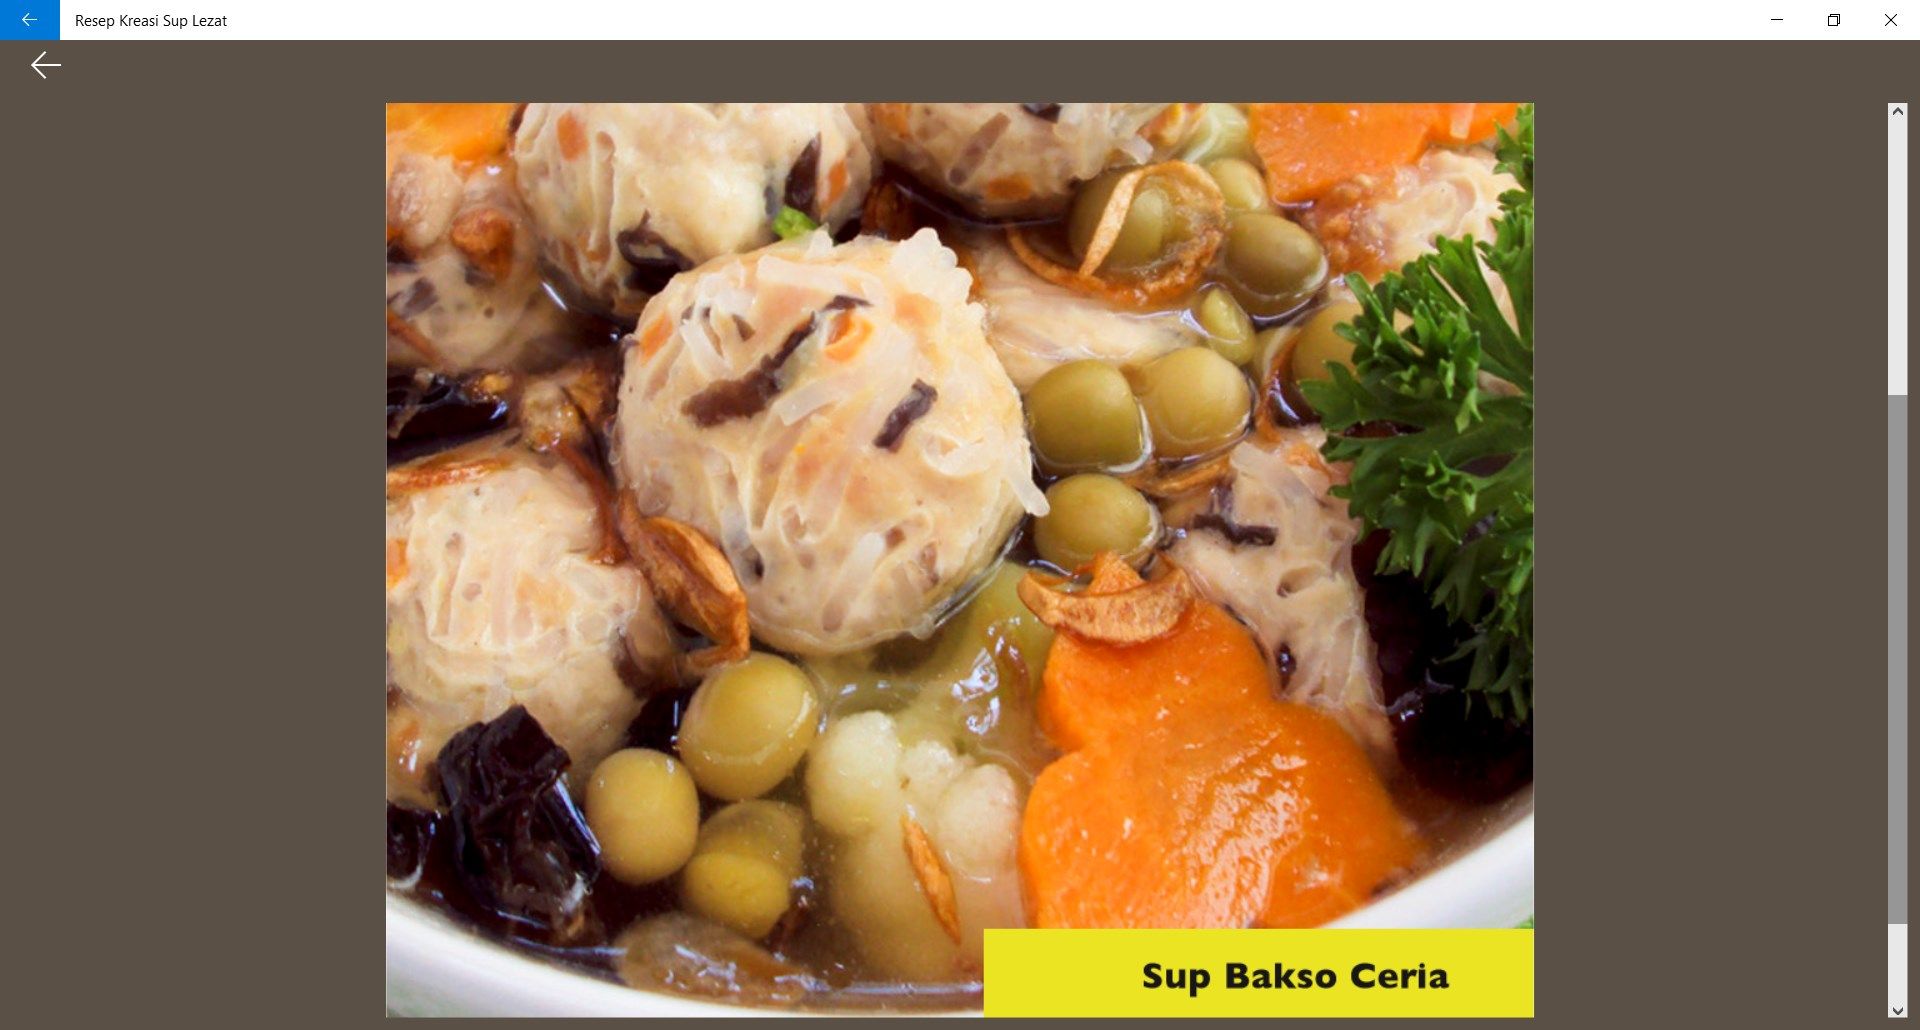 Menu lain yaitu sup bakso ceria, bakso tidak hanya daging ayam saja, namun kreasi campuran dengan sea food akan menjadikan cita rasa baru dalam rasa bakso.